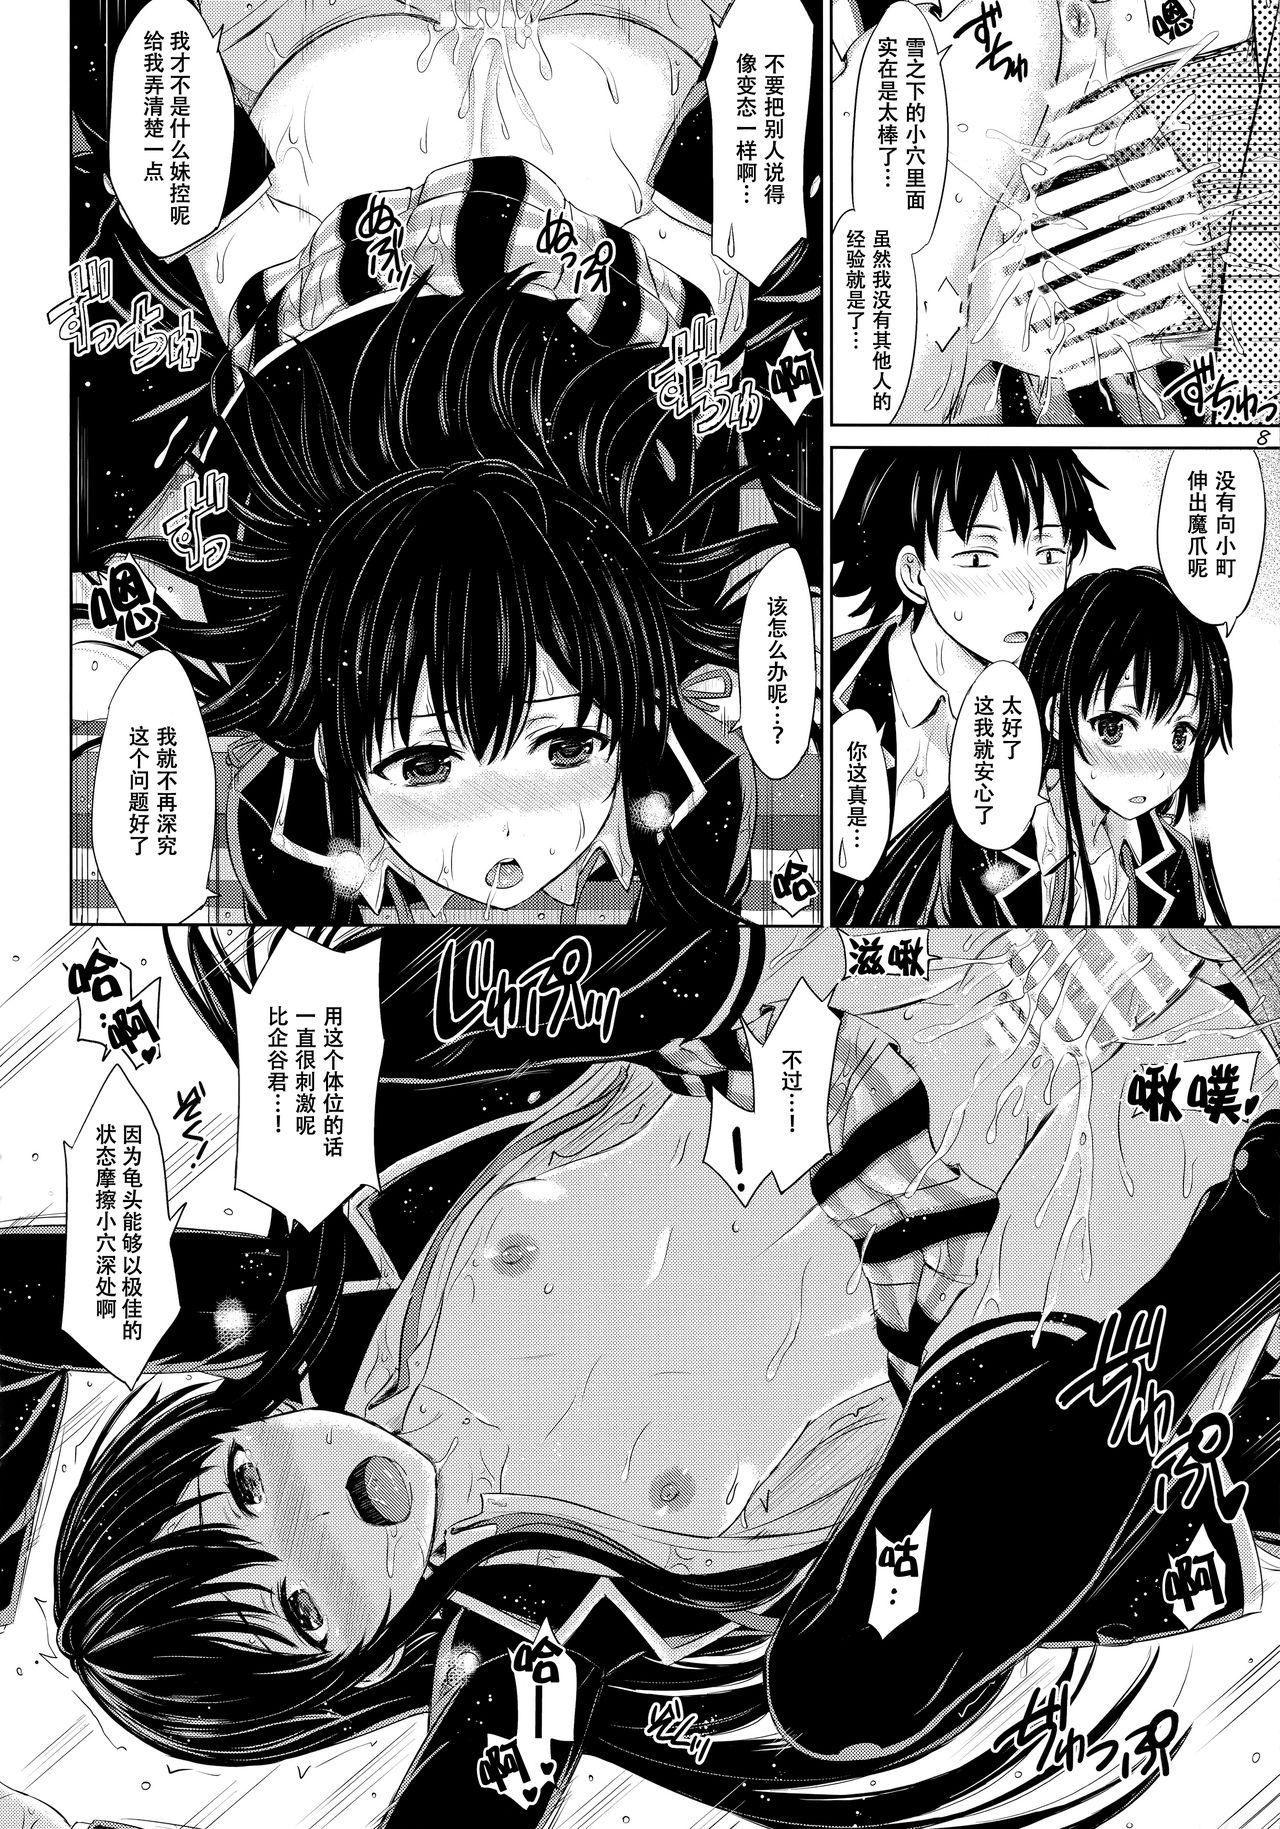 Menage Sanrenkyuu wa Asa made Nama Yukinon. - Yahari ore no seishun love come wa machigatteiru Hairy Sexy - Page 8